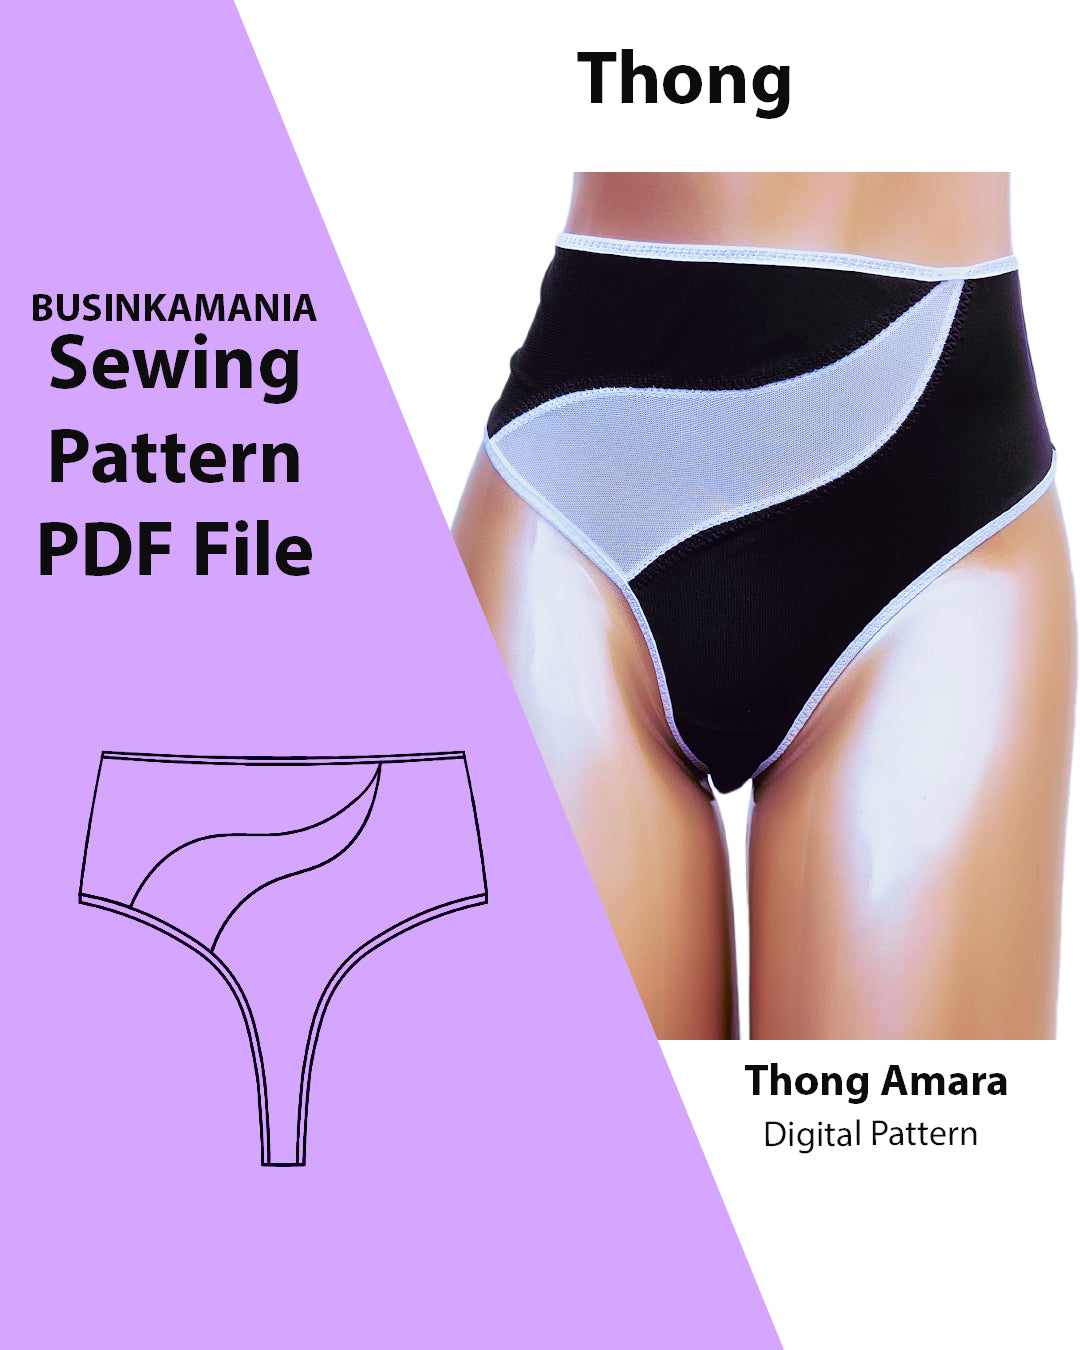 Thong Amara Sewing Pattern